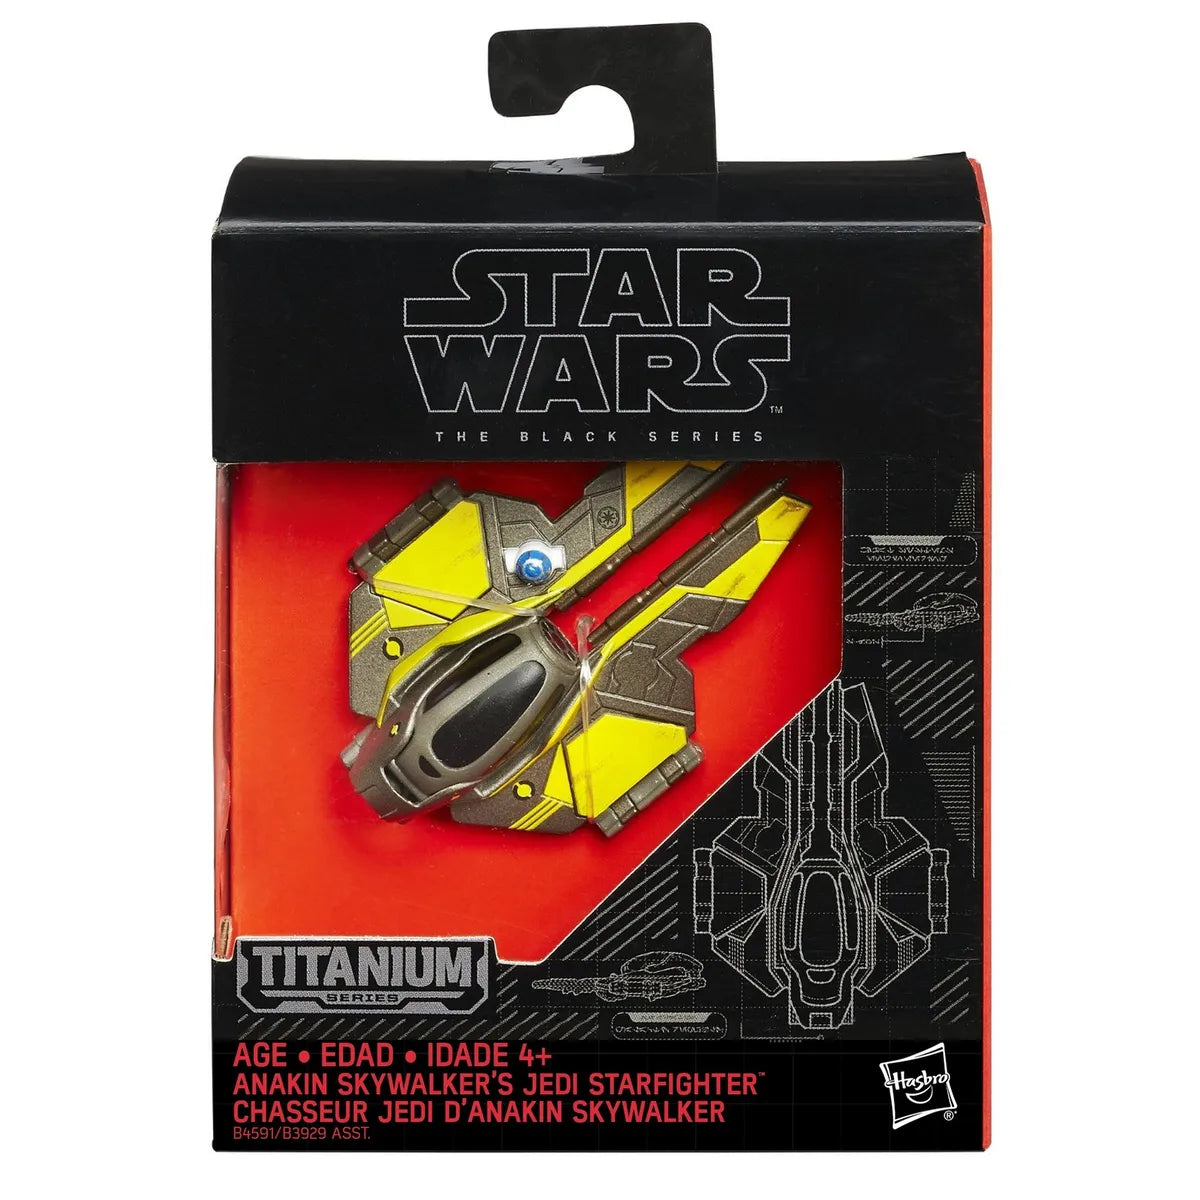 Star Wars The Black Series : Anakin Skywalker's Jedi Starfighter Titanium Figure